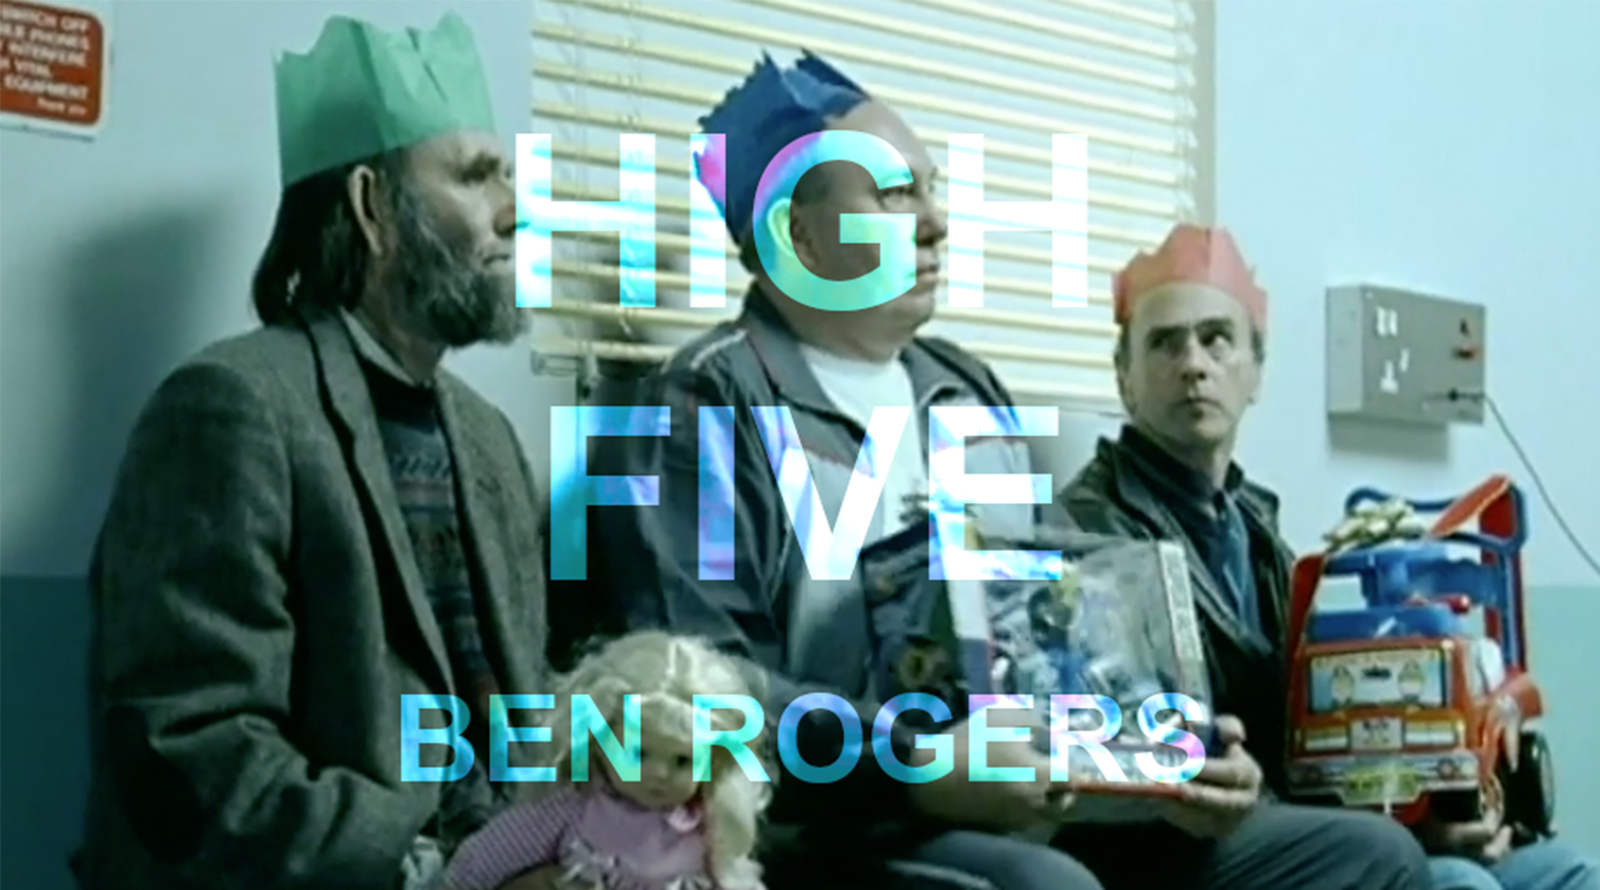 High Five Ben Rogers